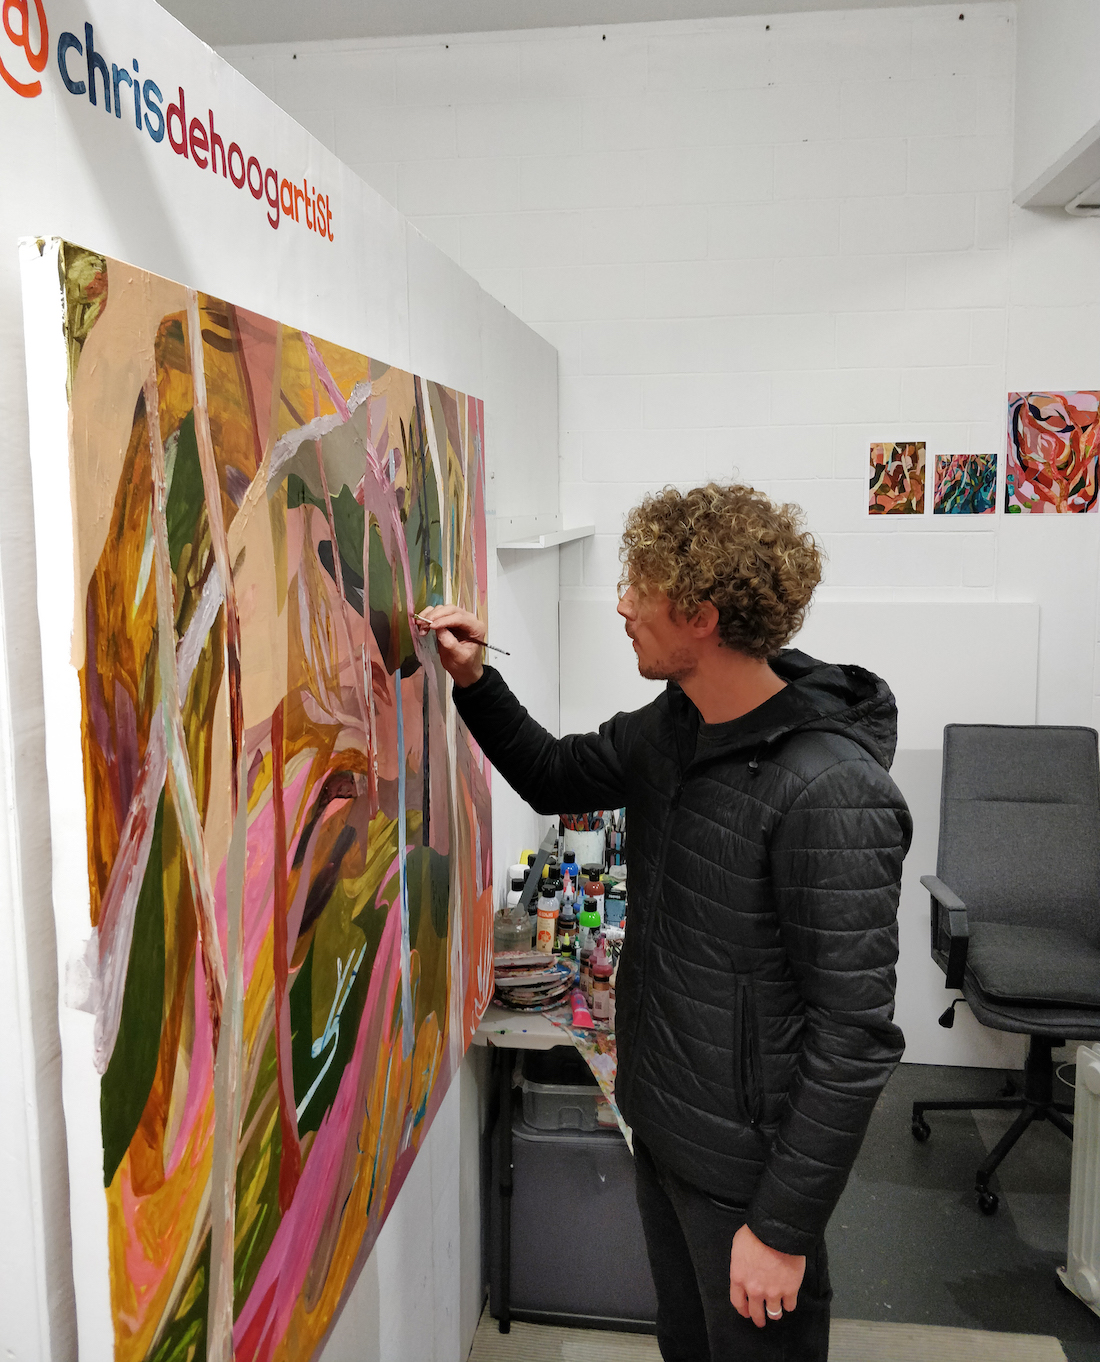 Chris de Hoog painting in his studio